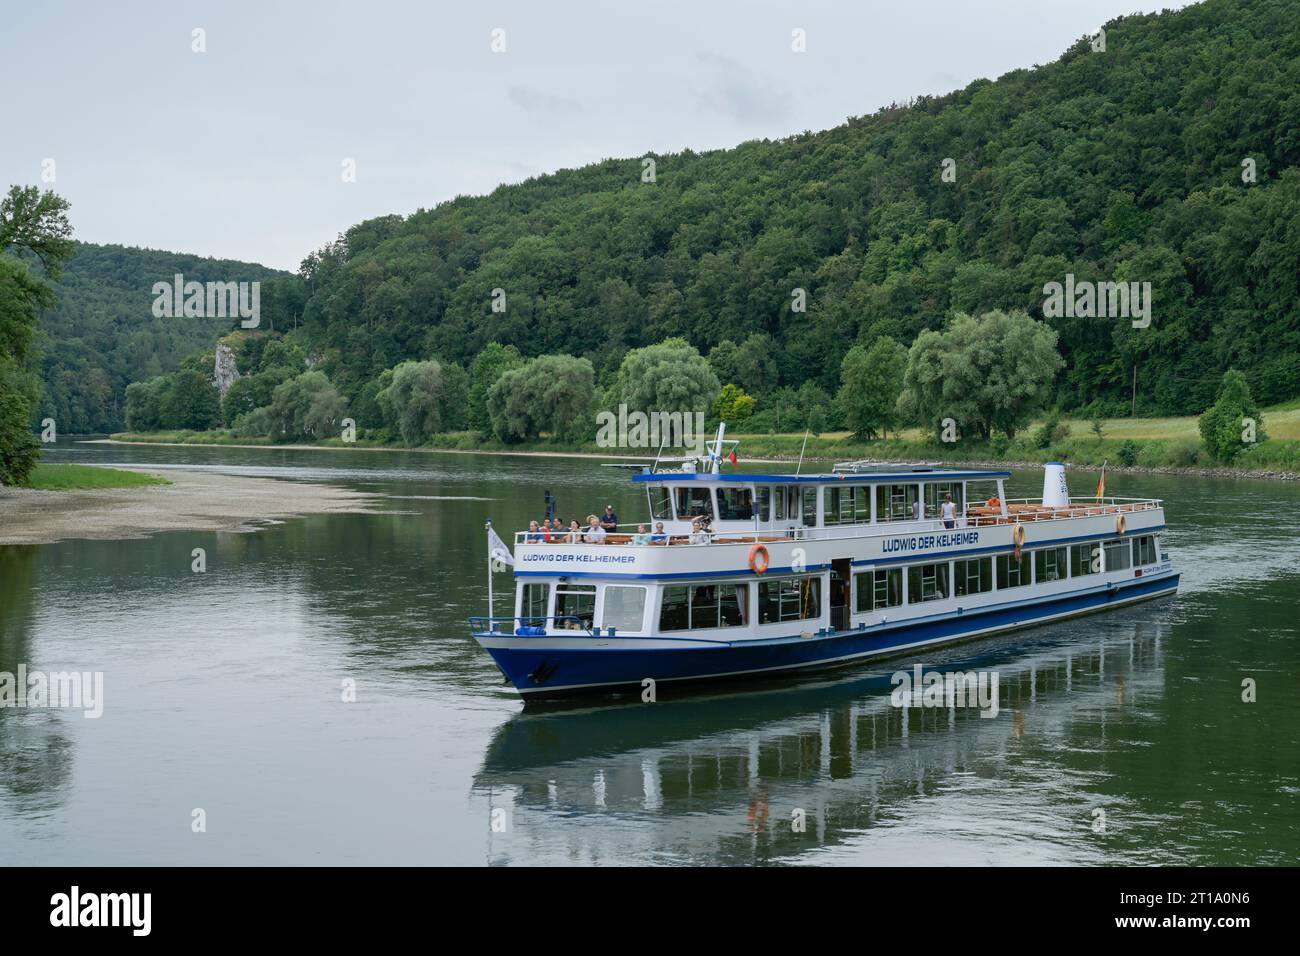 Ausflugsboot Ludwig der Kehlheimer, Donau bei Kehlheim, Bayern, Deutschland Stock Photo